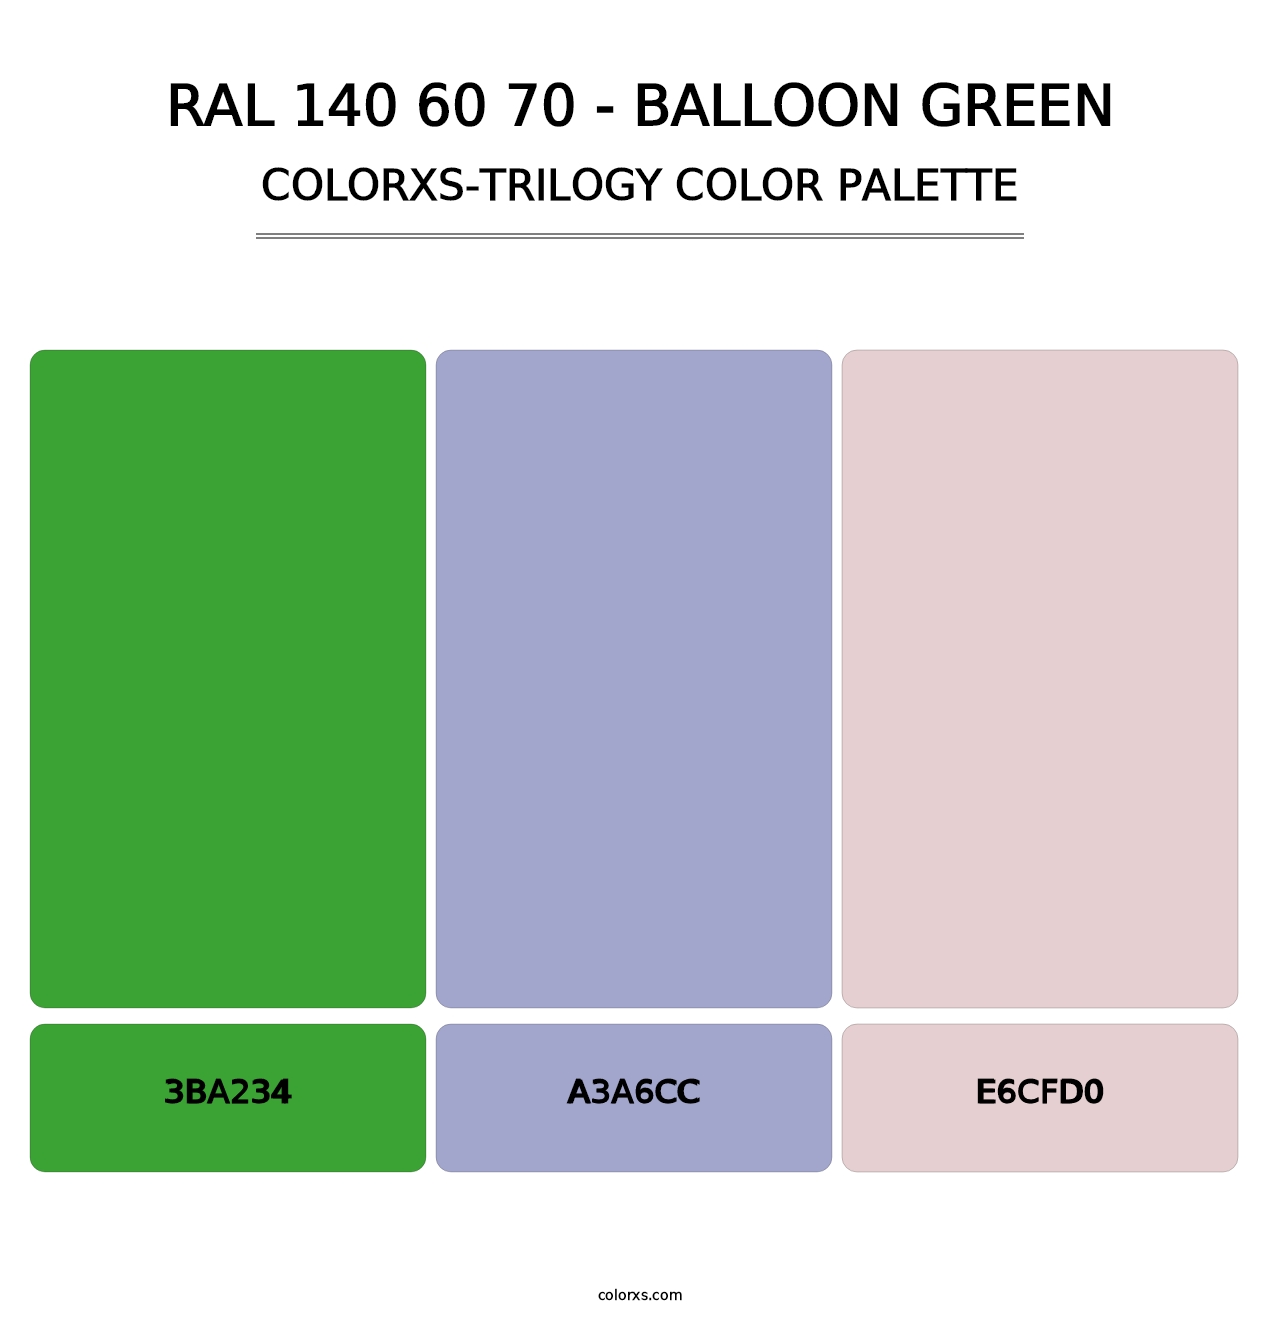 RAL 140 60 70 - Balloon Green - Colorxs Trilogy Palette